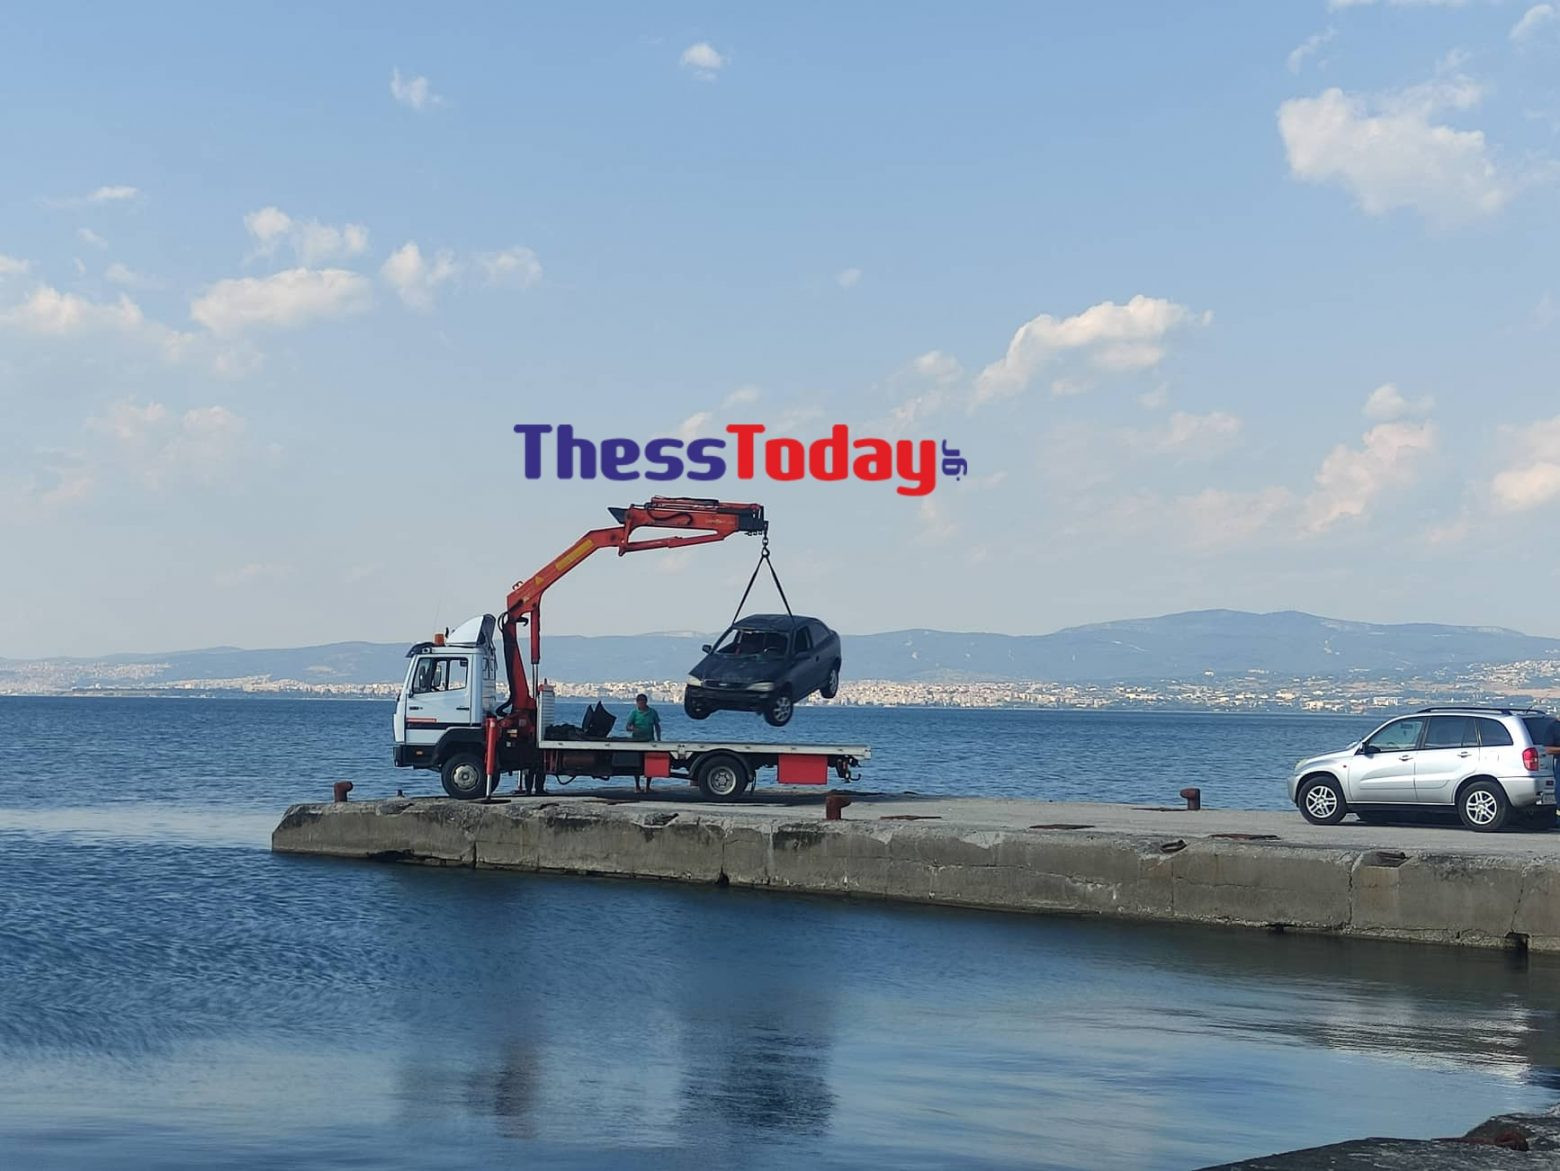 Θεσσαλονίκη: Μητέρα και γιος οι δύο νεκροί – Έβαλαν χειροπέδες και αυτοκτόνησαν